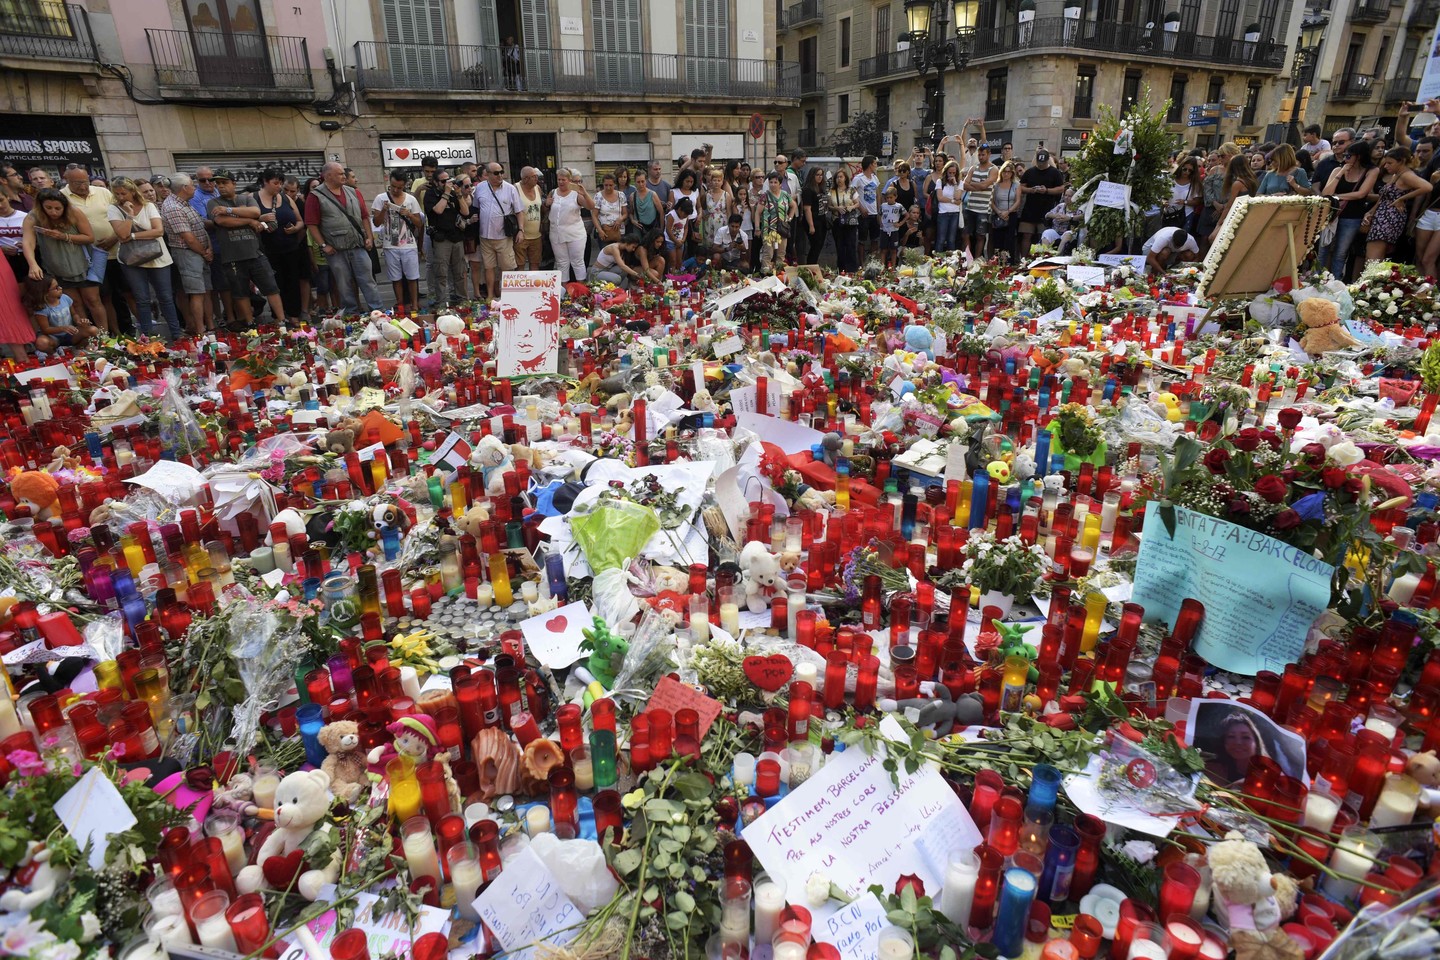  Per išpuolį Barselonoje žuvo 13 žmonių. Dar vienas žmogus žuvo Kambrilse.<br> AFP/„Scanpix“ nuotr.